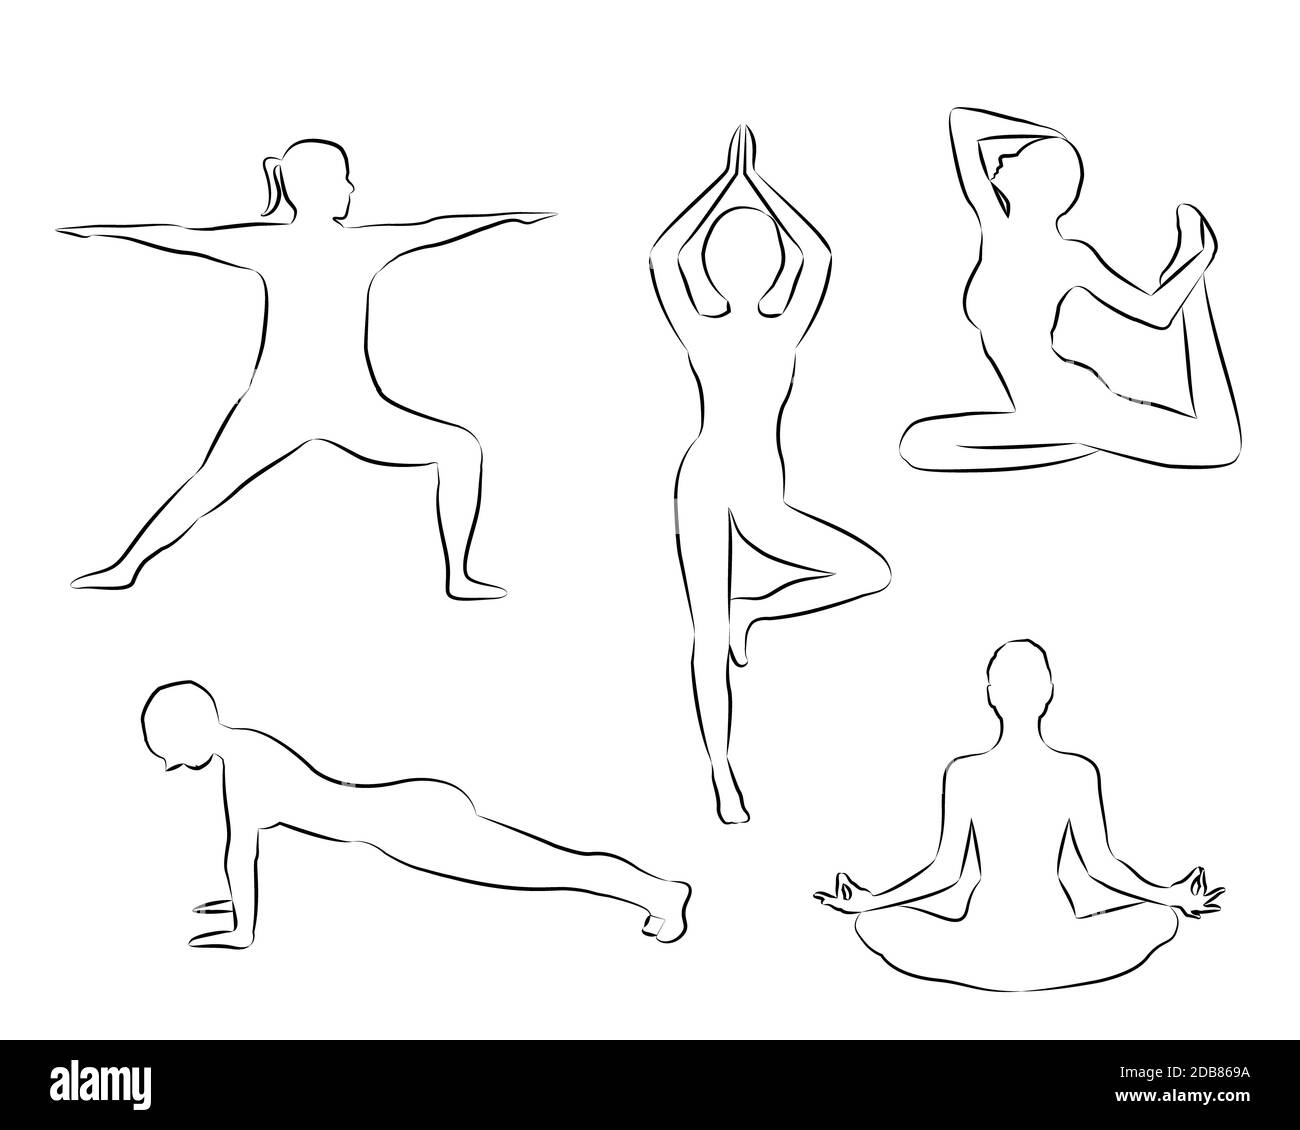 Frauen tun Yoga-Übungen Silhouetten skizzieren Vektor-Illustration auf einem weißen Hintergrund isoliert. Aktivität im Freien Meditation und Entspannung. Aktiv Stockfoto